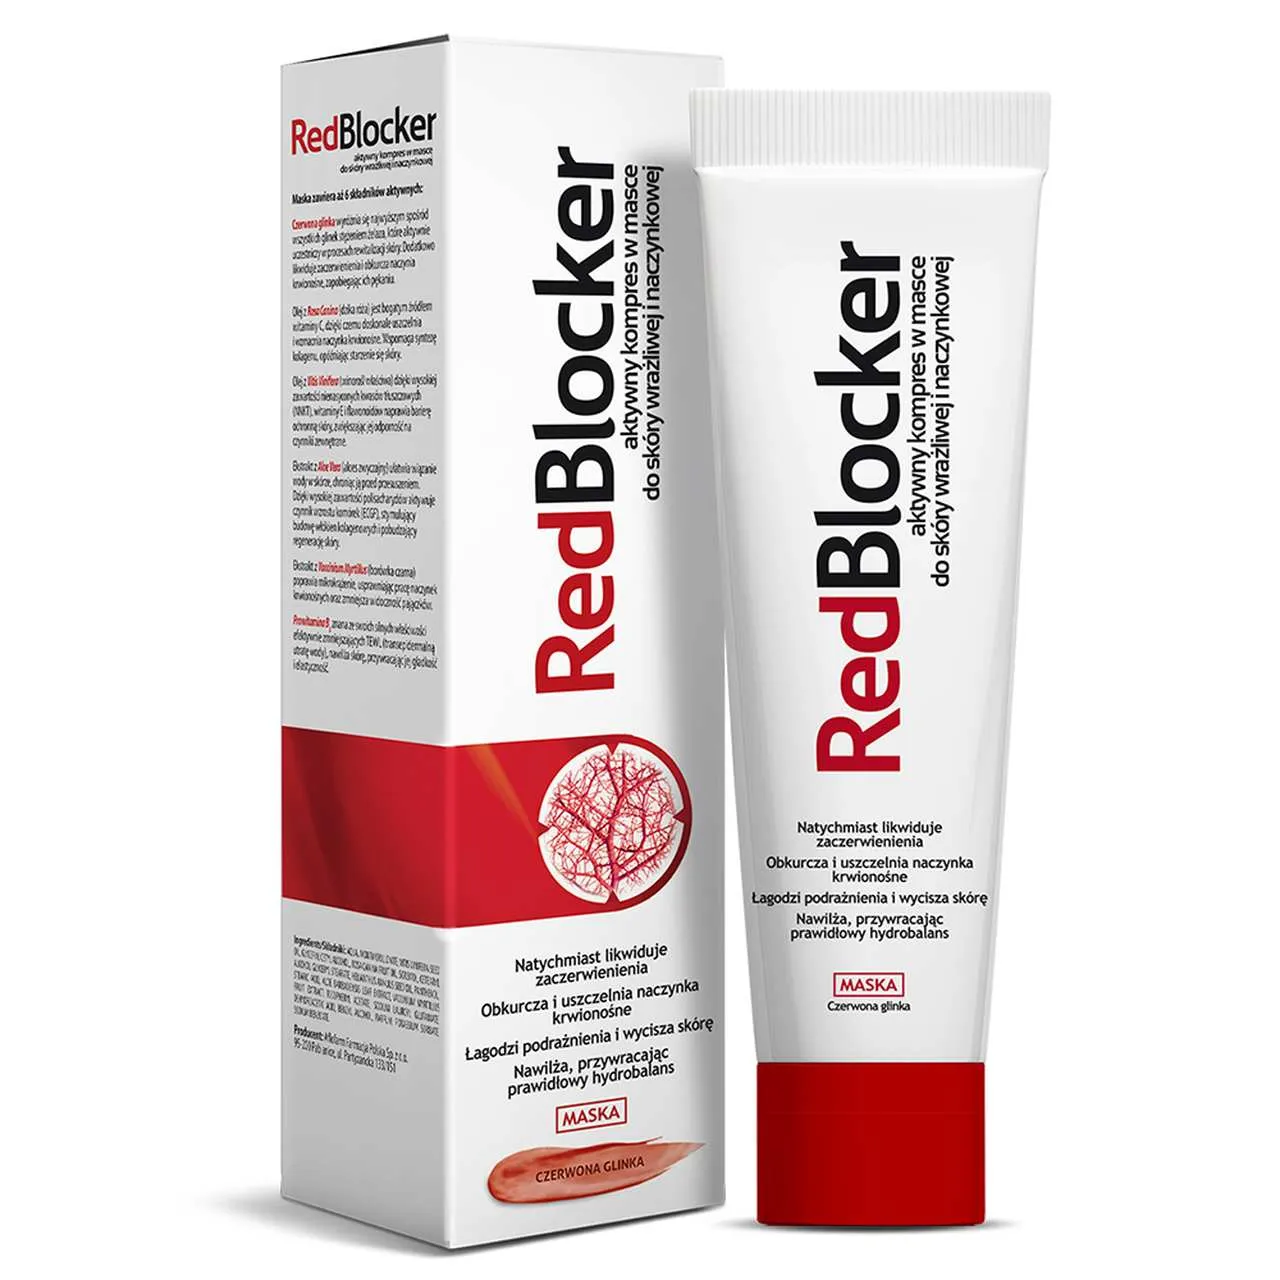 Redblocker, aktywny kompres w masce do skóry wrażliwej i naczynkowej, 50 ml